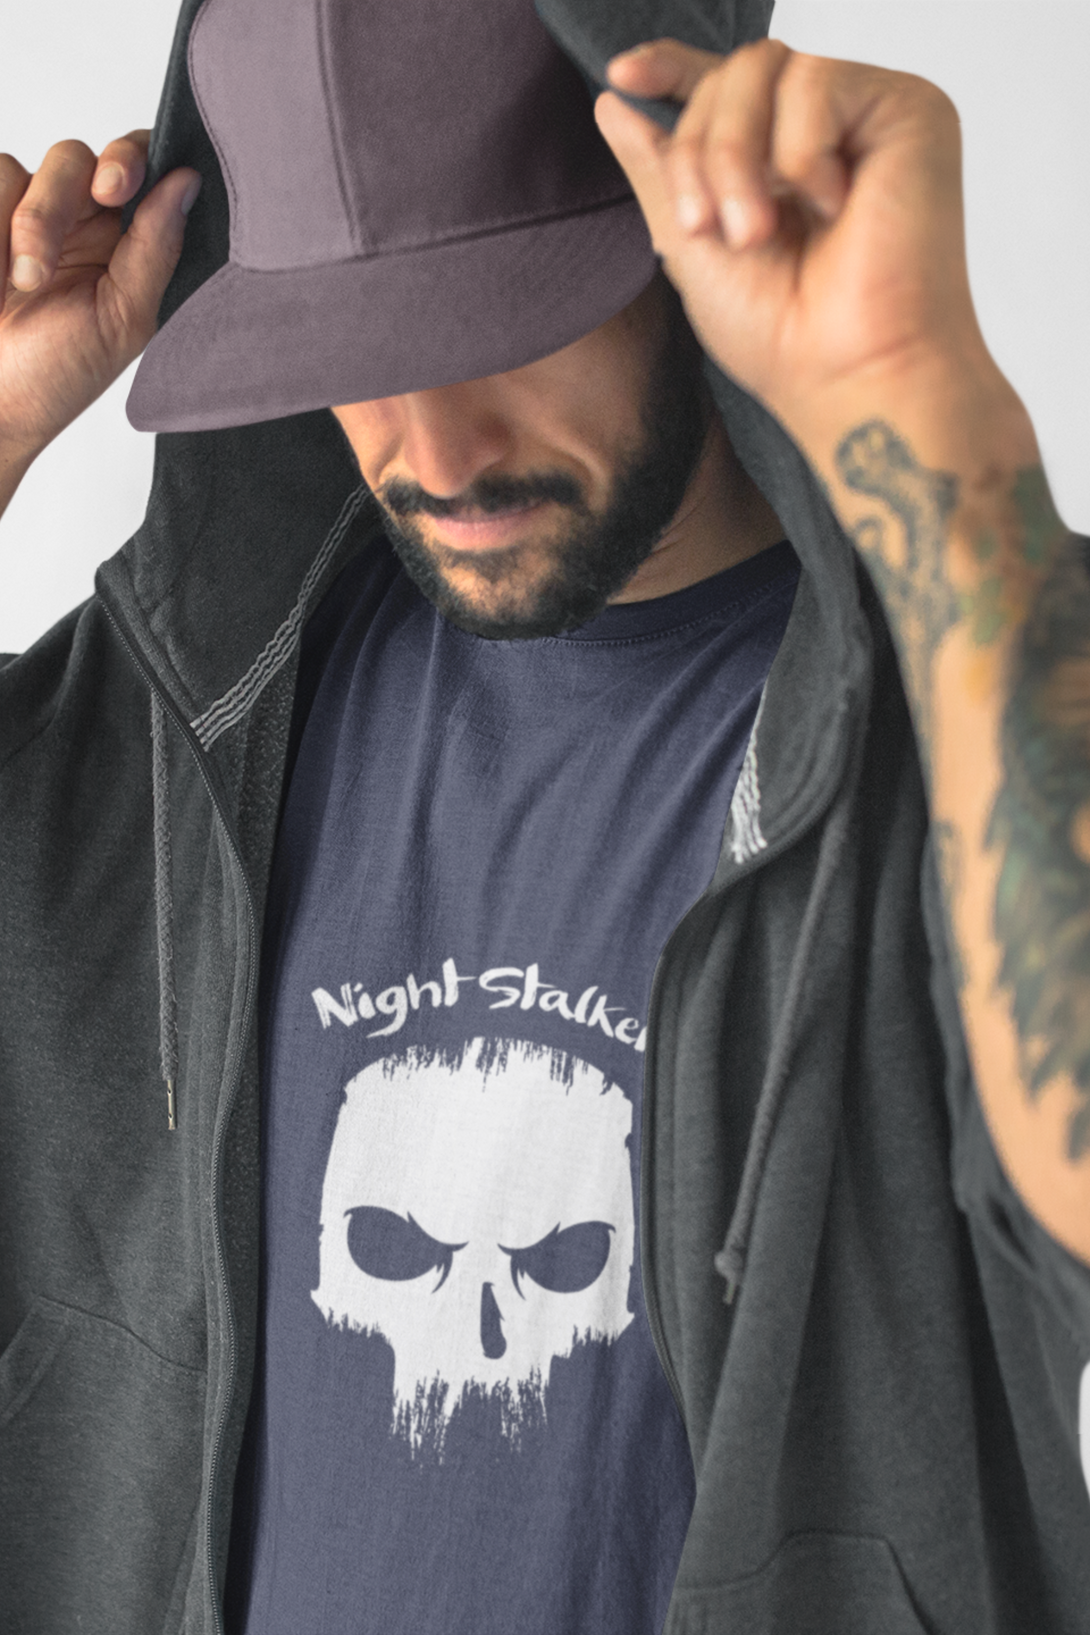 Skull Night Stalker Printed T Shirt For Men - WowWaves - 3